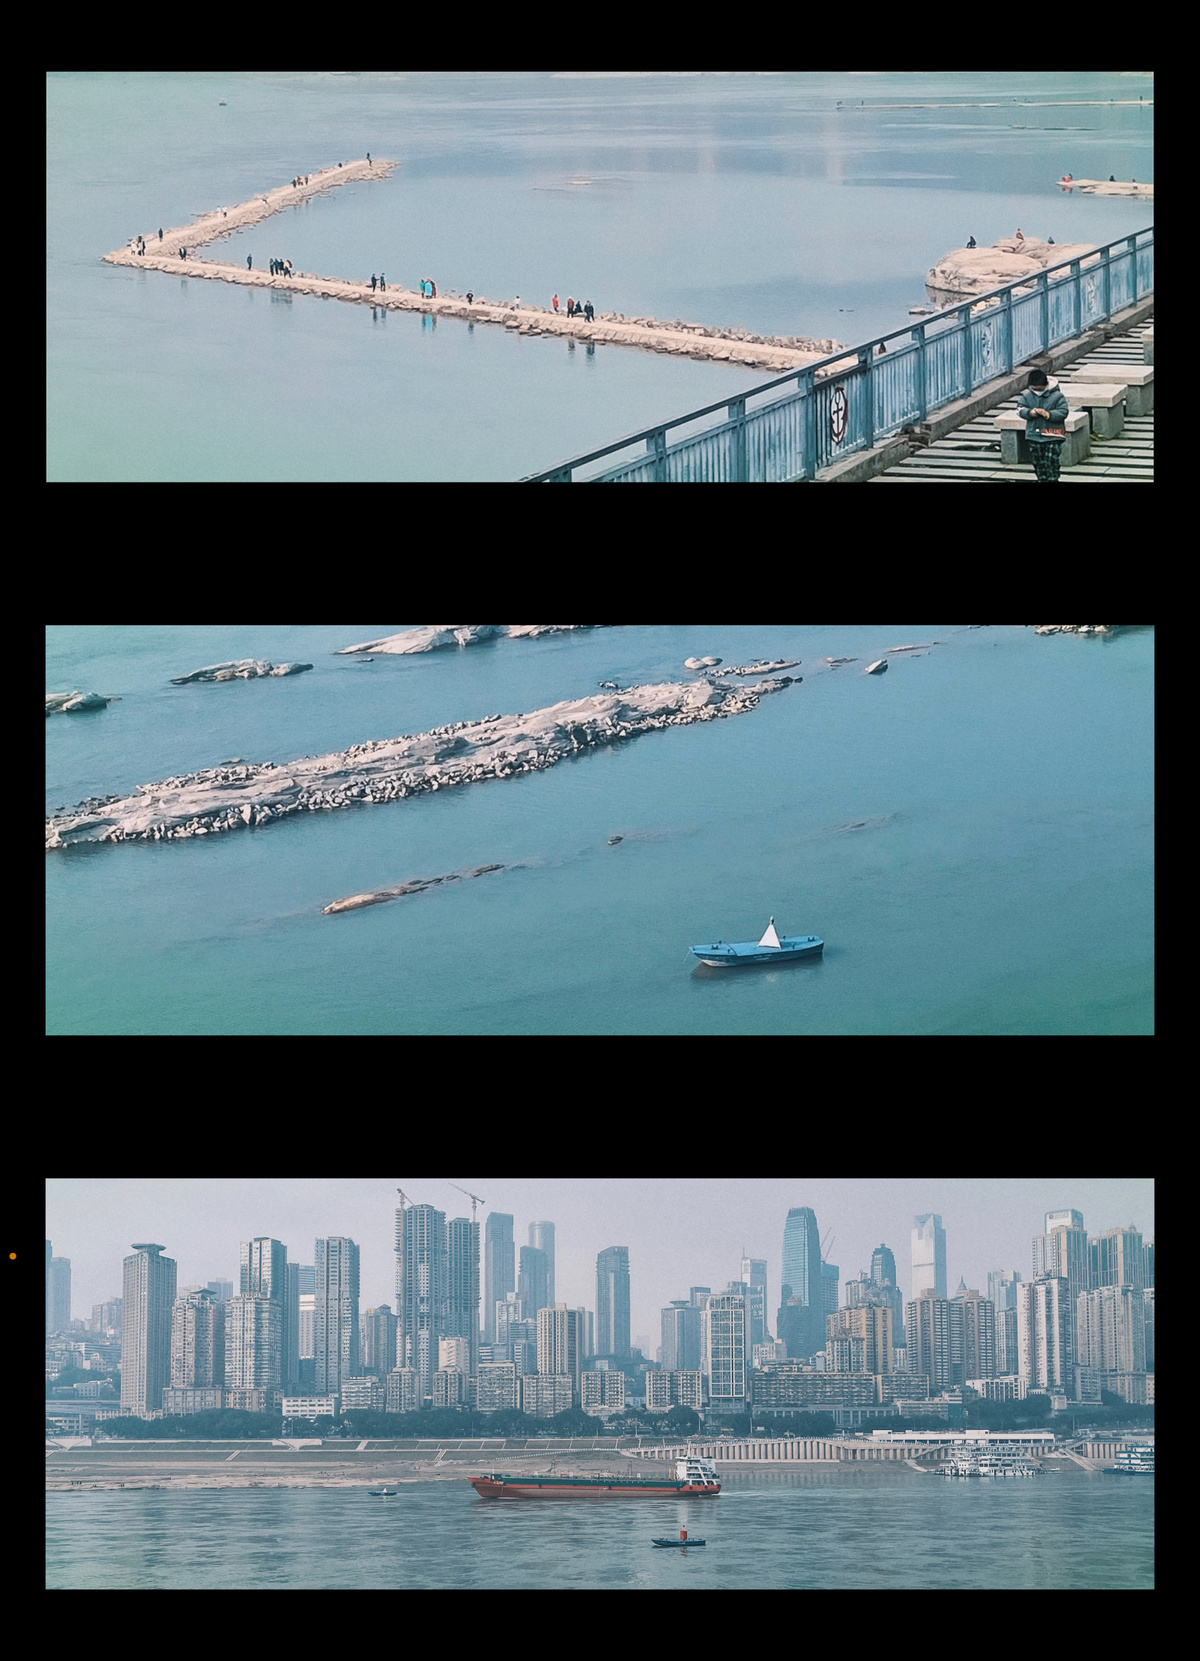 一系列照片展示了一座大型桥和停泊在水面上的船。